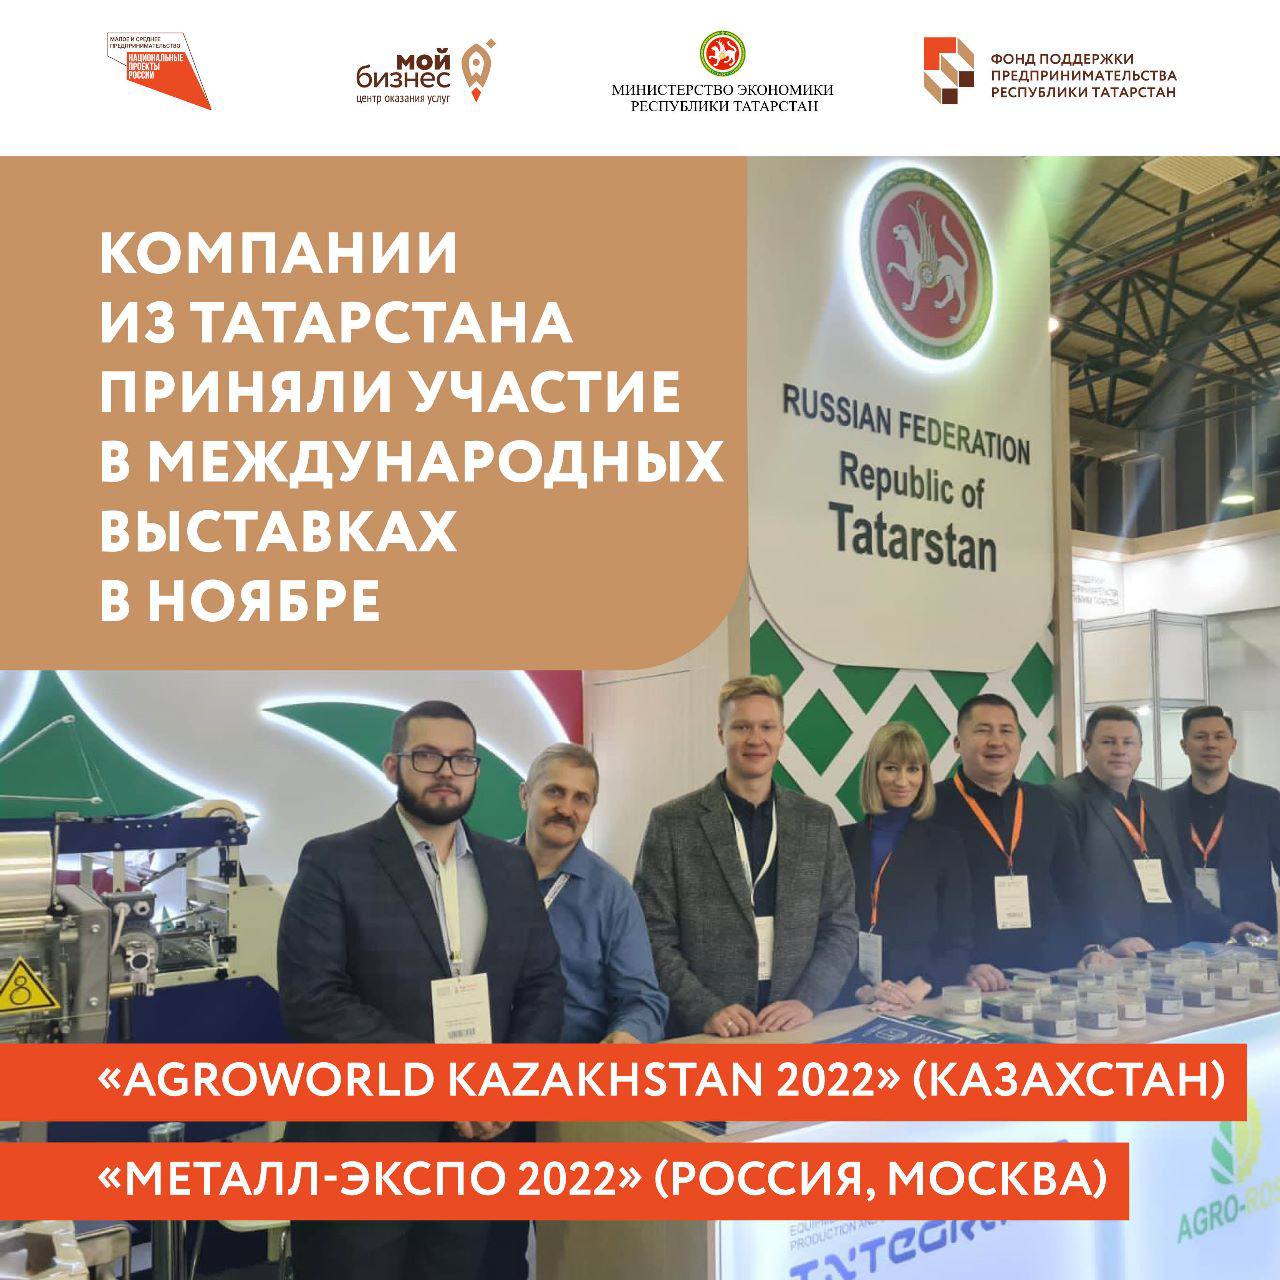 Компании из Татарстана в ноябре приняли участие сразу в 4 международных выставках.